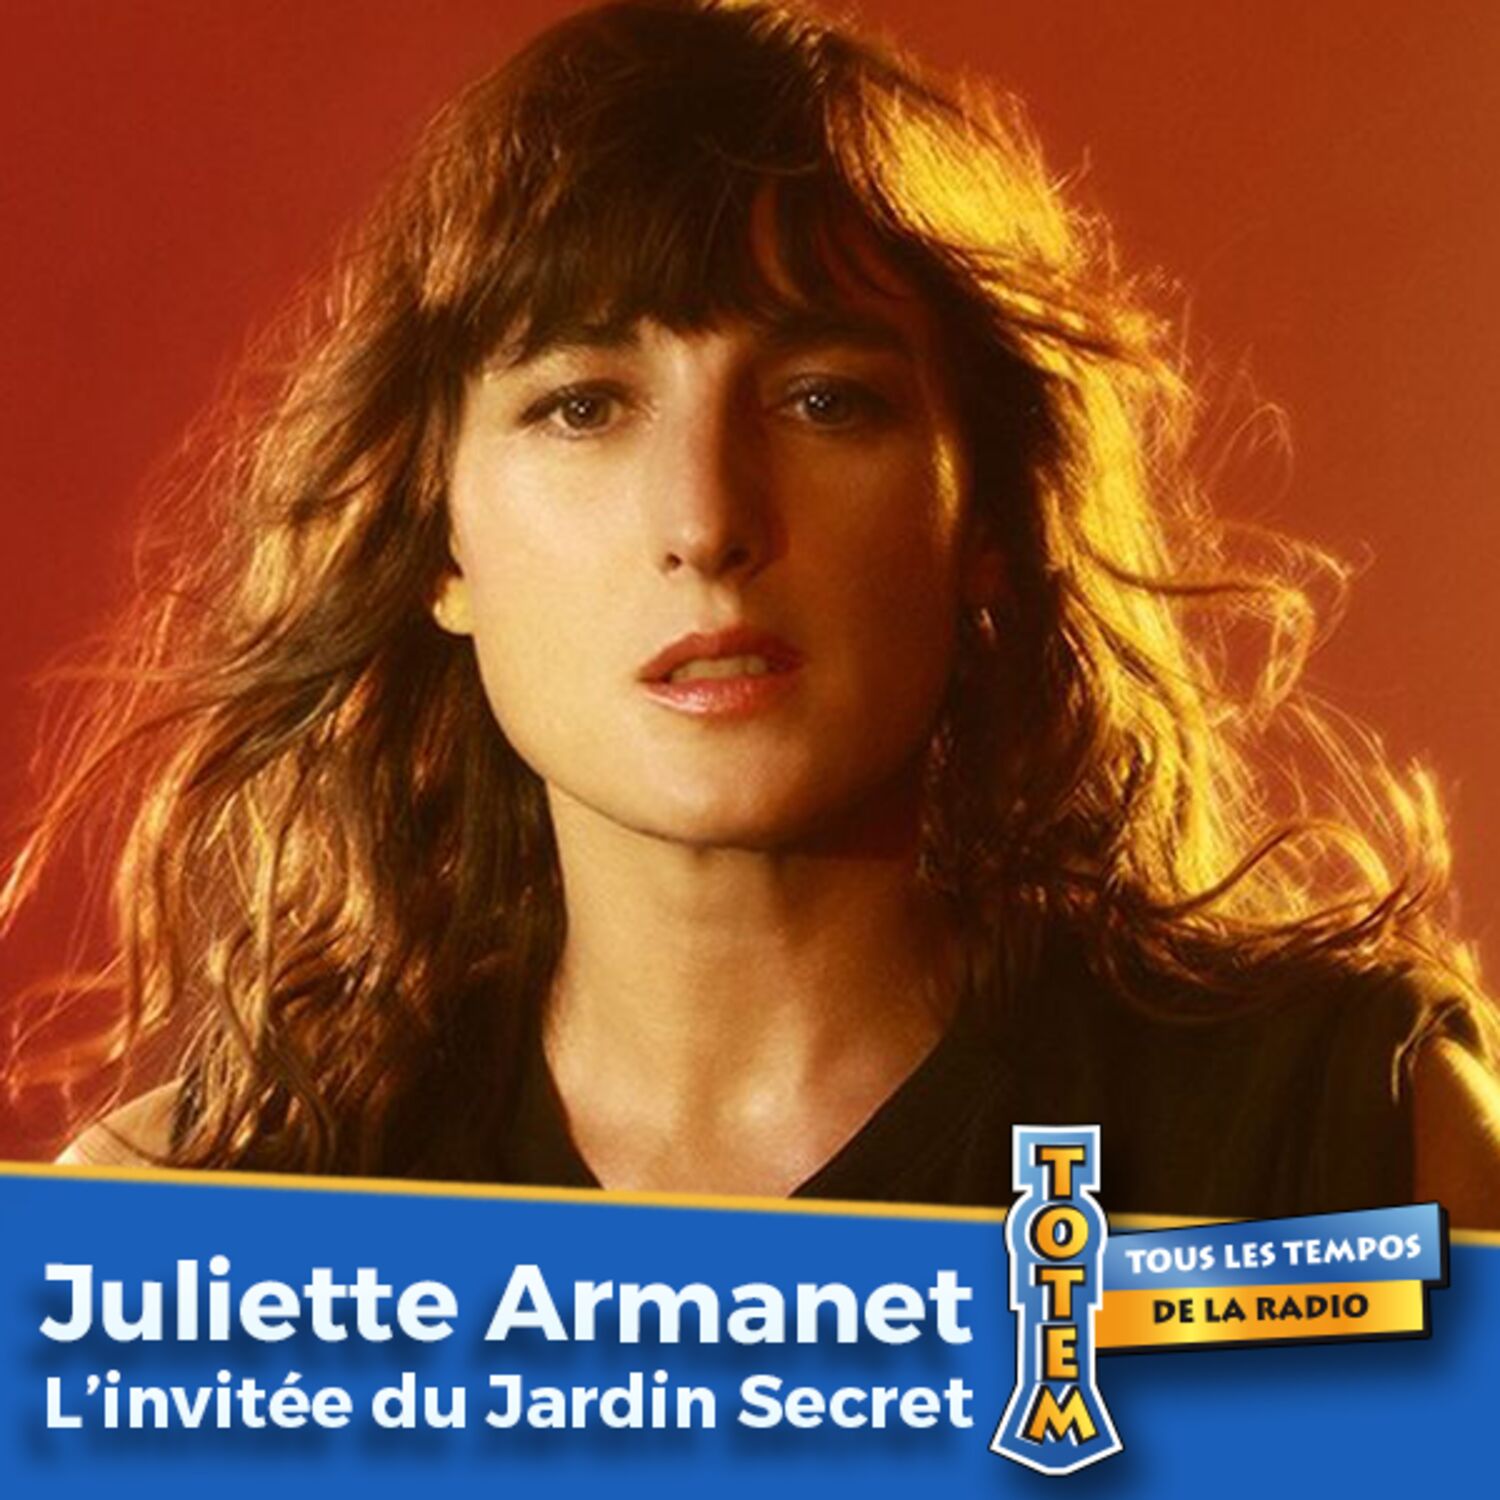 Juliette Armanet et sa carrière avant la chanson